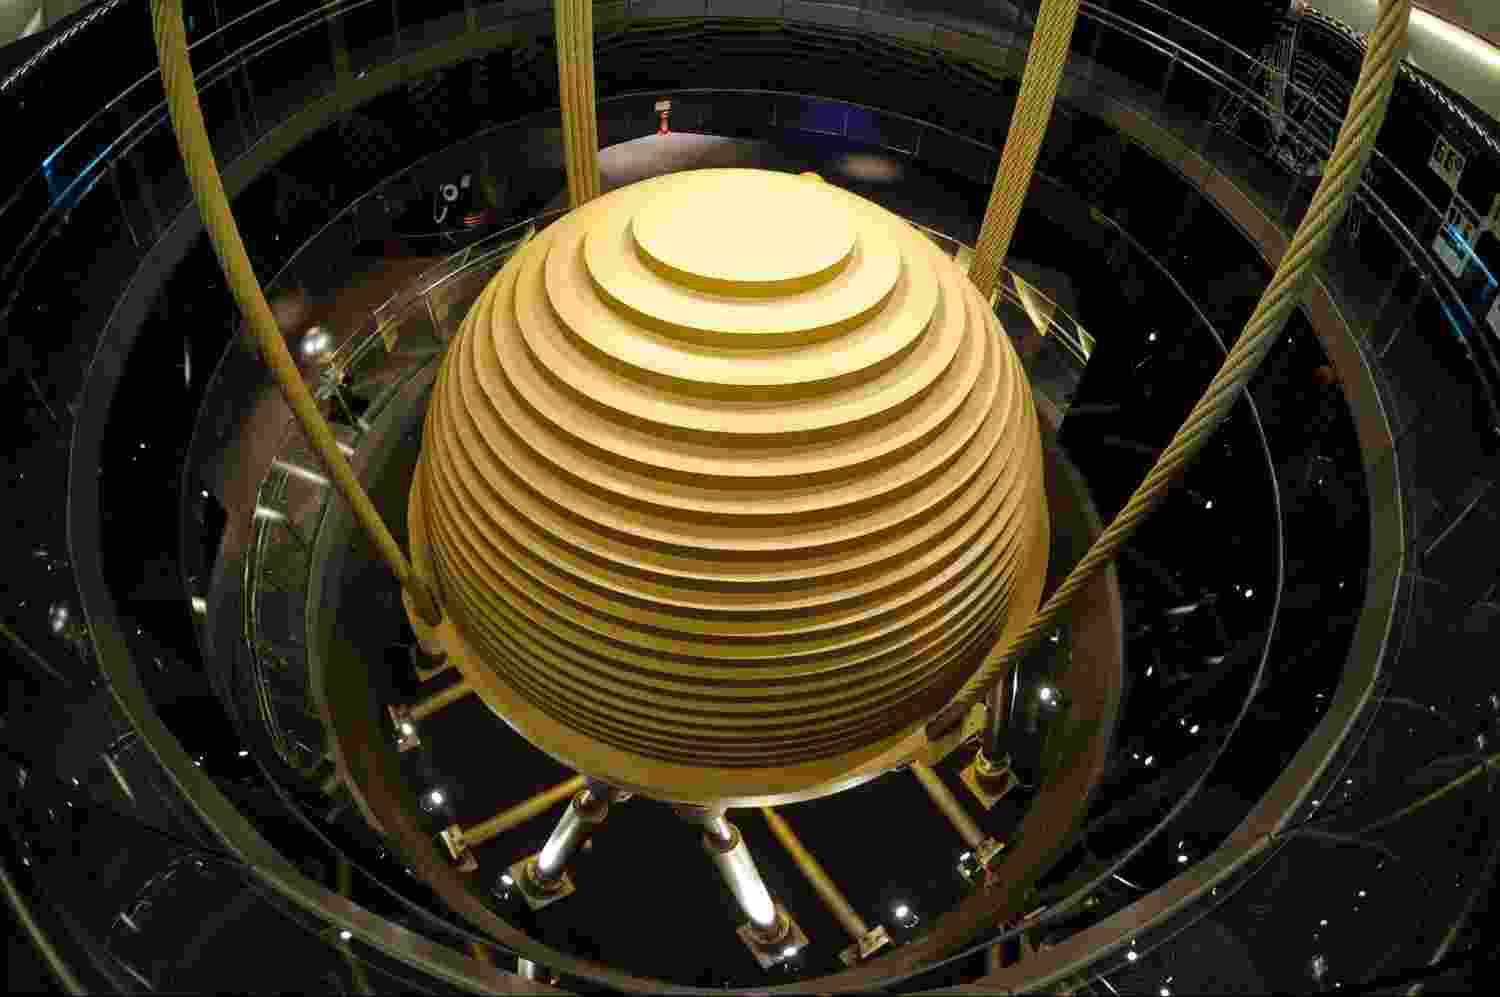 Taipei pendulum